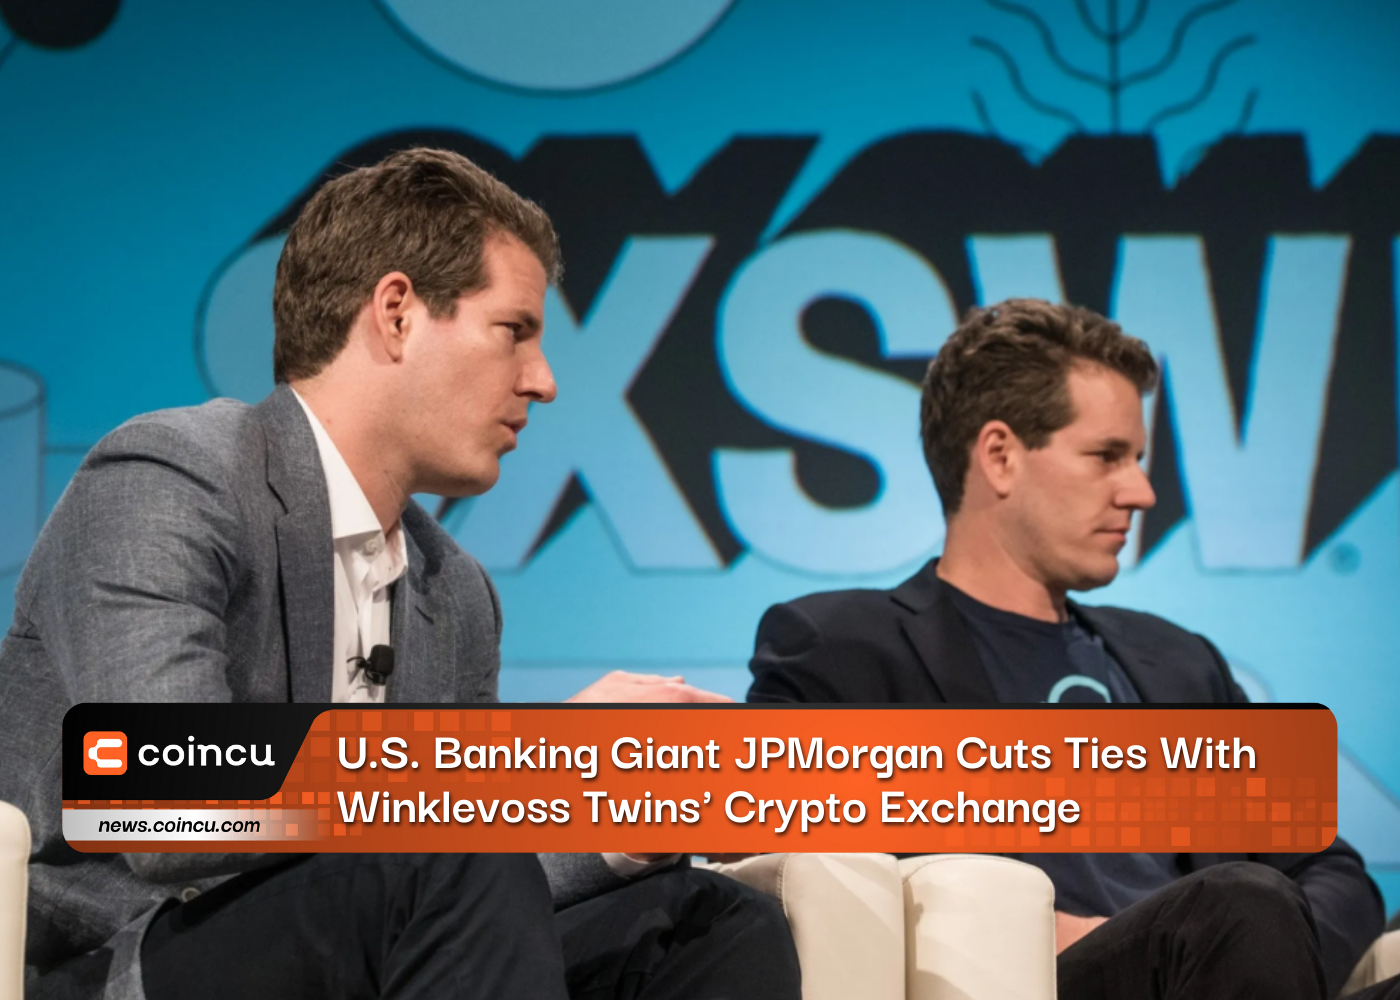 Der US-Bankenriese JPMorgan trennt sich von der Krypto-Börse Winklevoss Twins